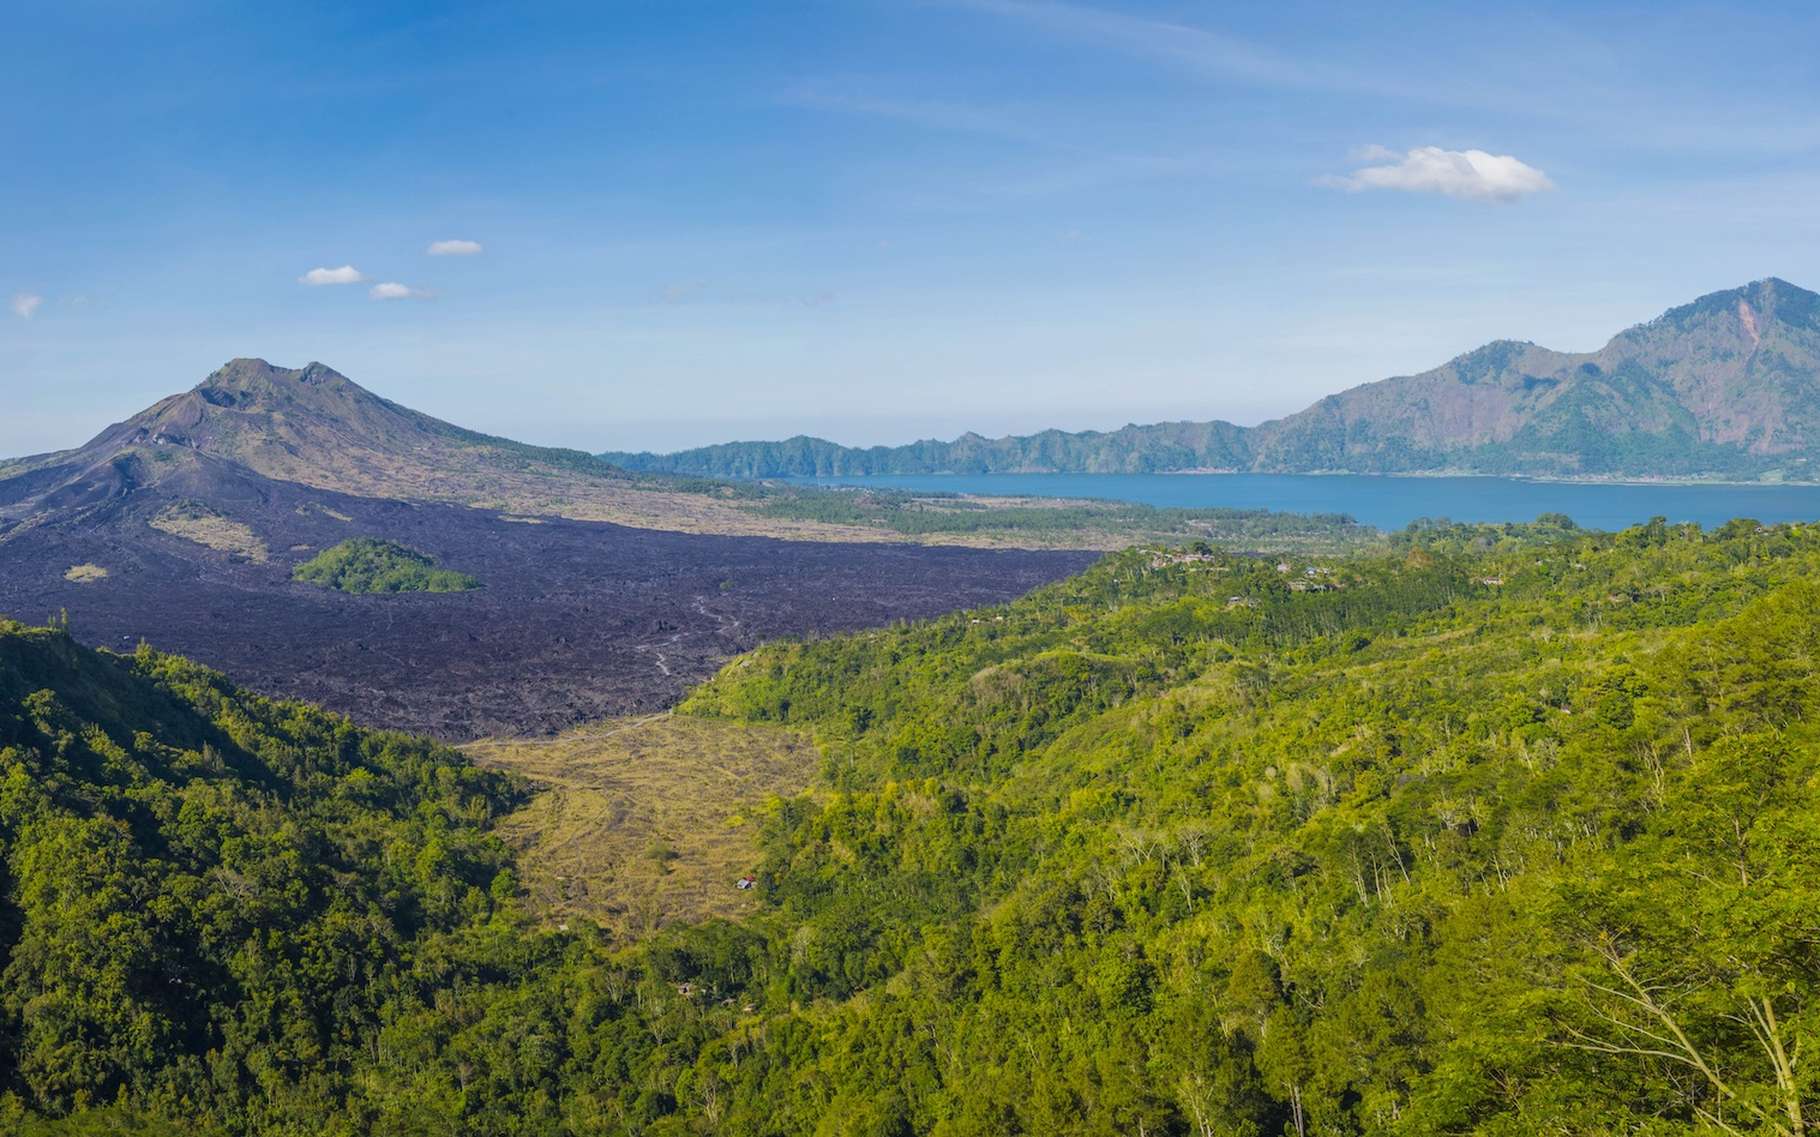 Le climat mondial sous l’influence des montagnes en Indonésie ?